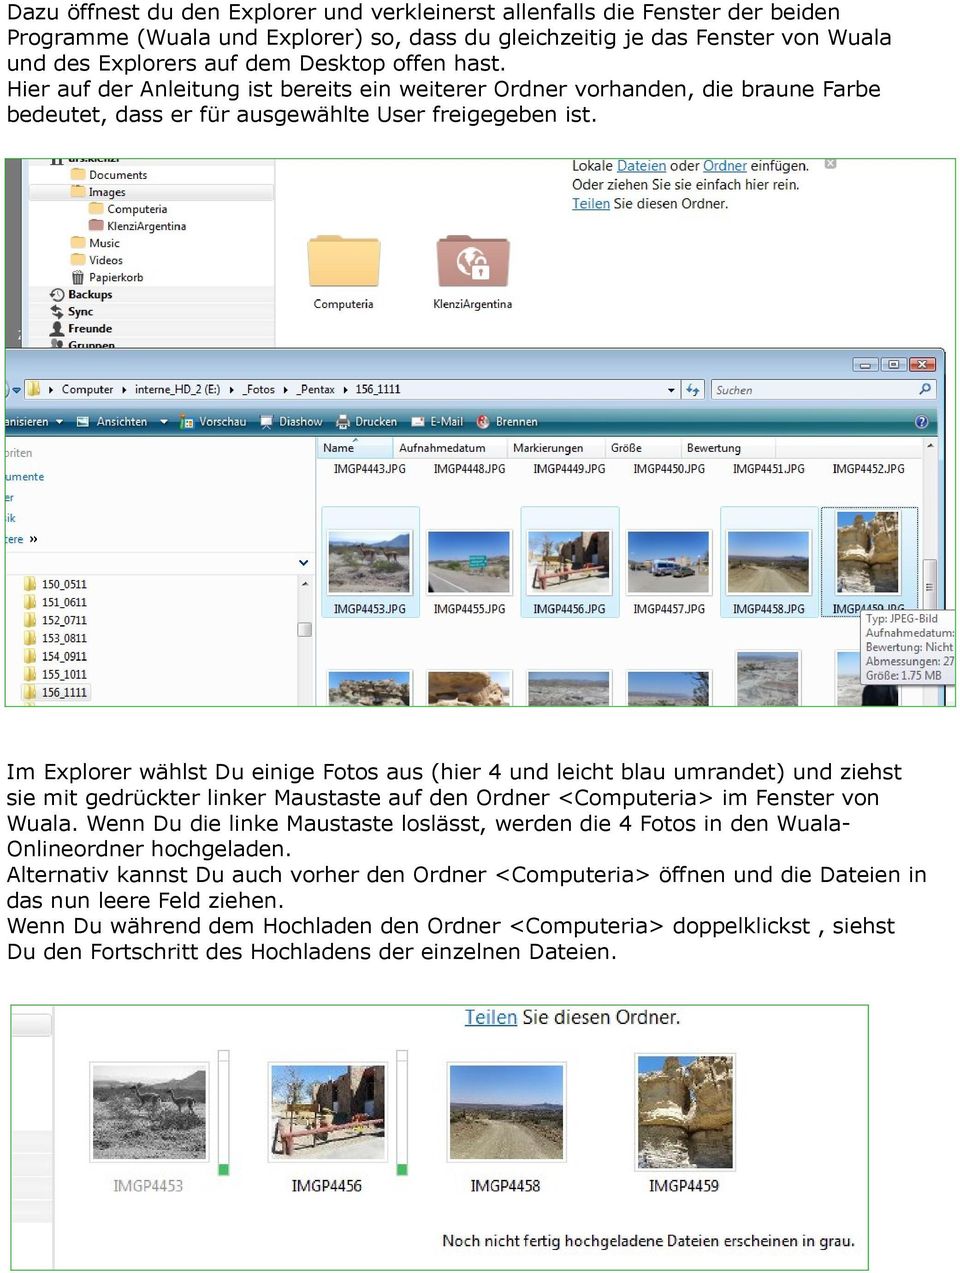 Im Explorer wählst Du einige Fotos aus (hier 4 und leicht blau umrandet) und ziehst sie mit gedrückter linker Maustaste auf den Ordner <Computeria> im Fenster von Wuala.